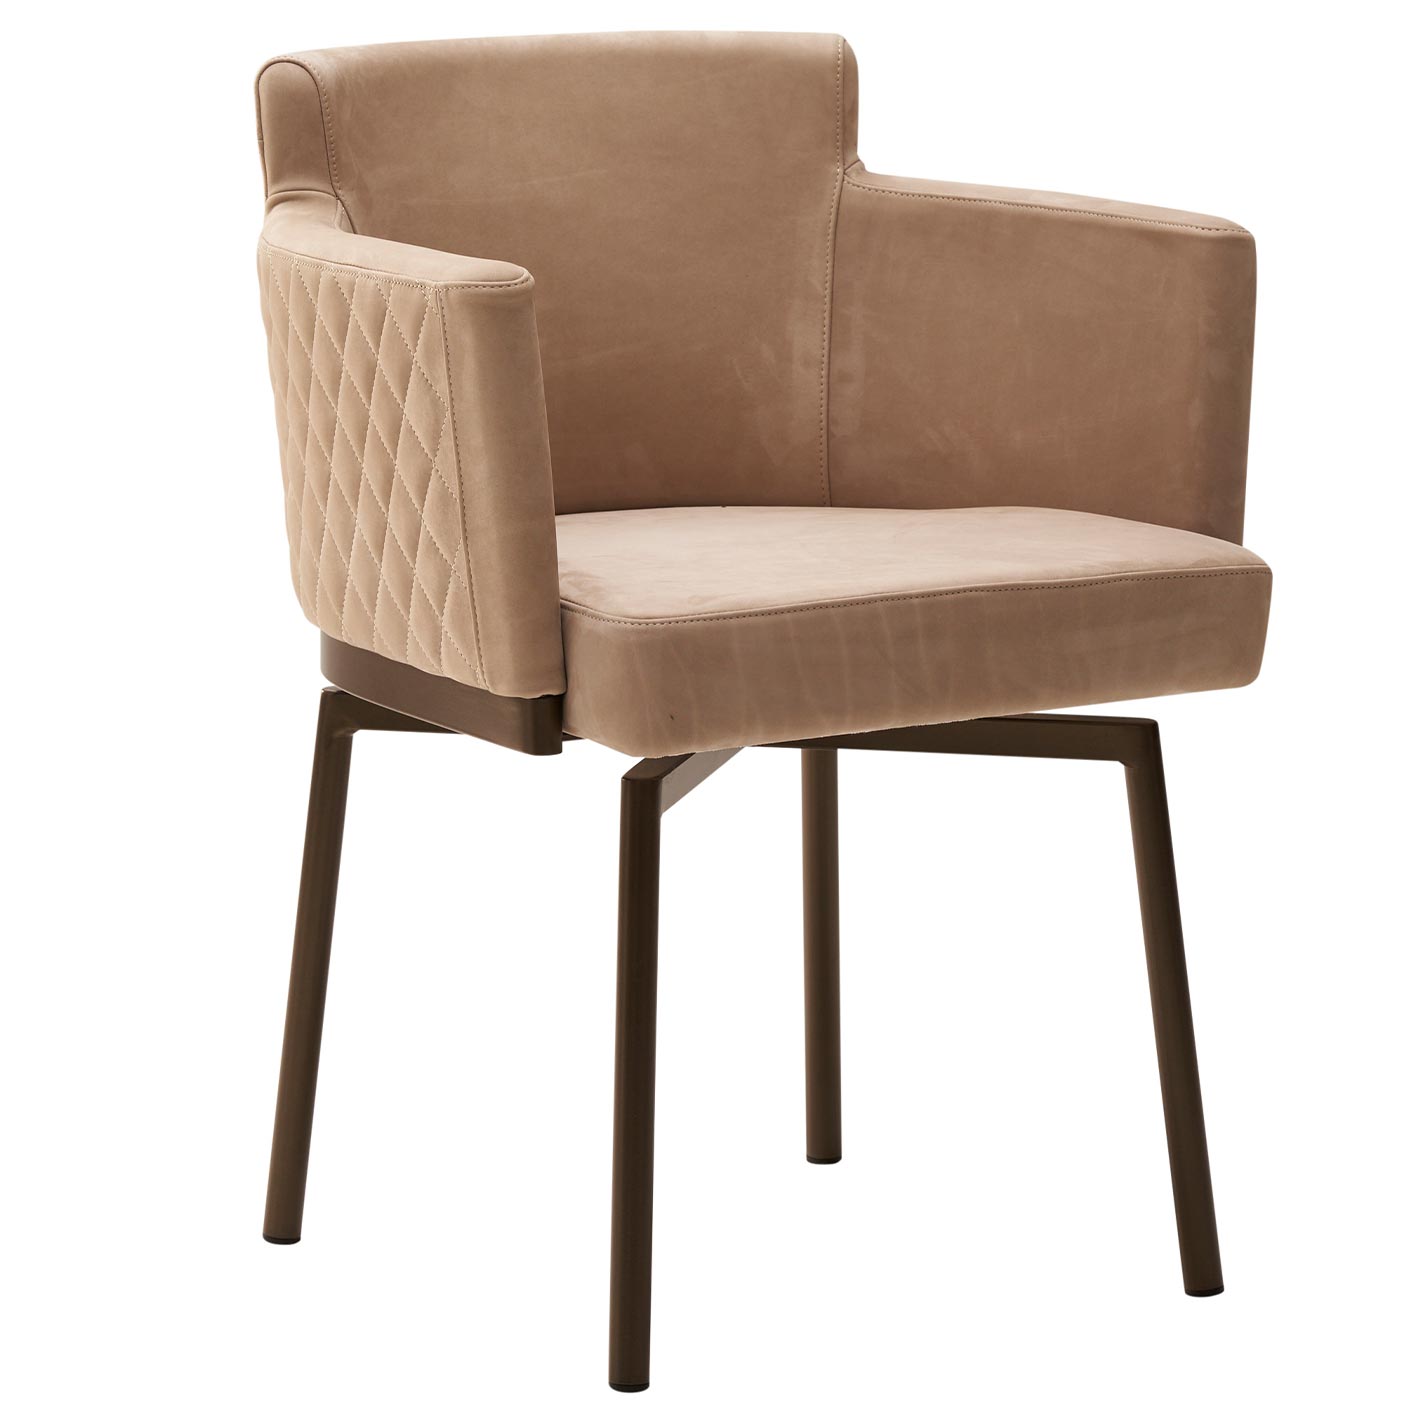 Tische & Stühle - BRIGITTE Armlehnstuhl